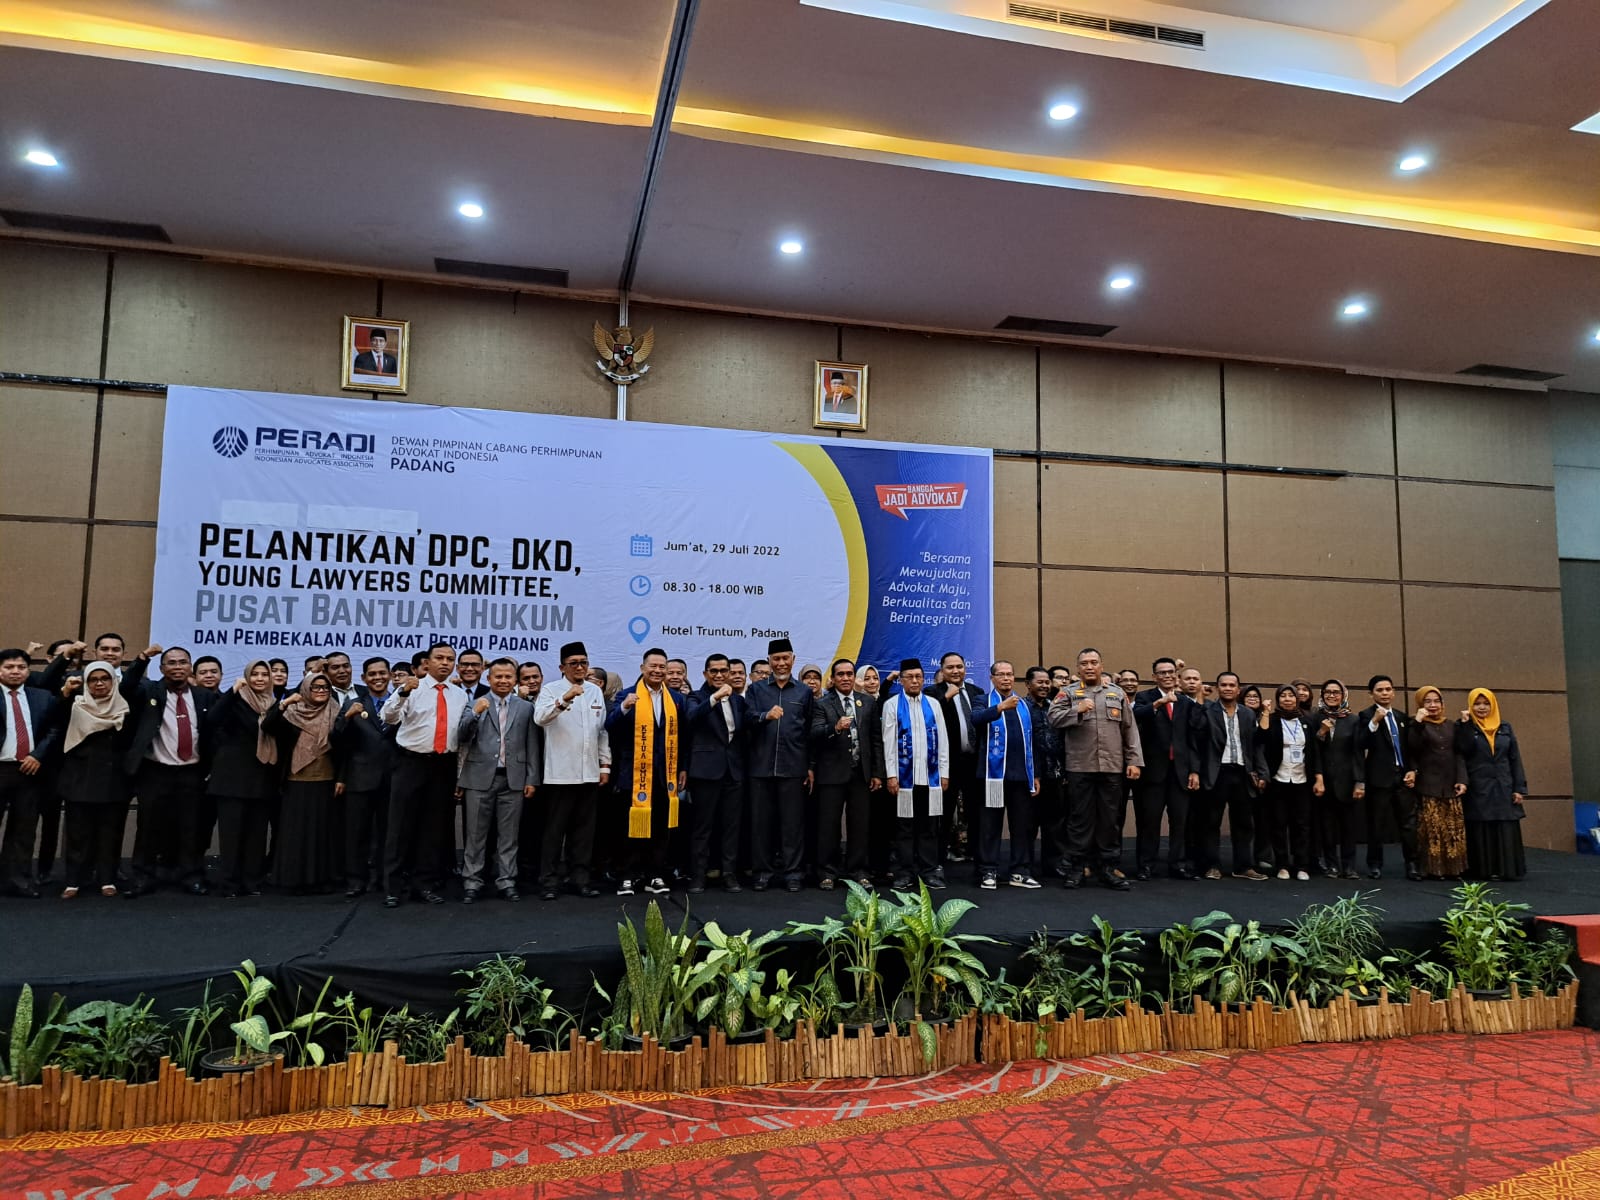 Pelantikan DPC, DKD, YLC, PBH dan Pembekalan Advokat Peradi Padang Masa Jabatan 2022-2027. Foto: istimewa. 